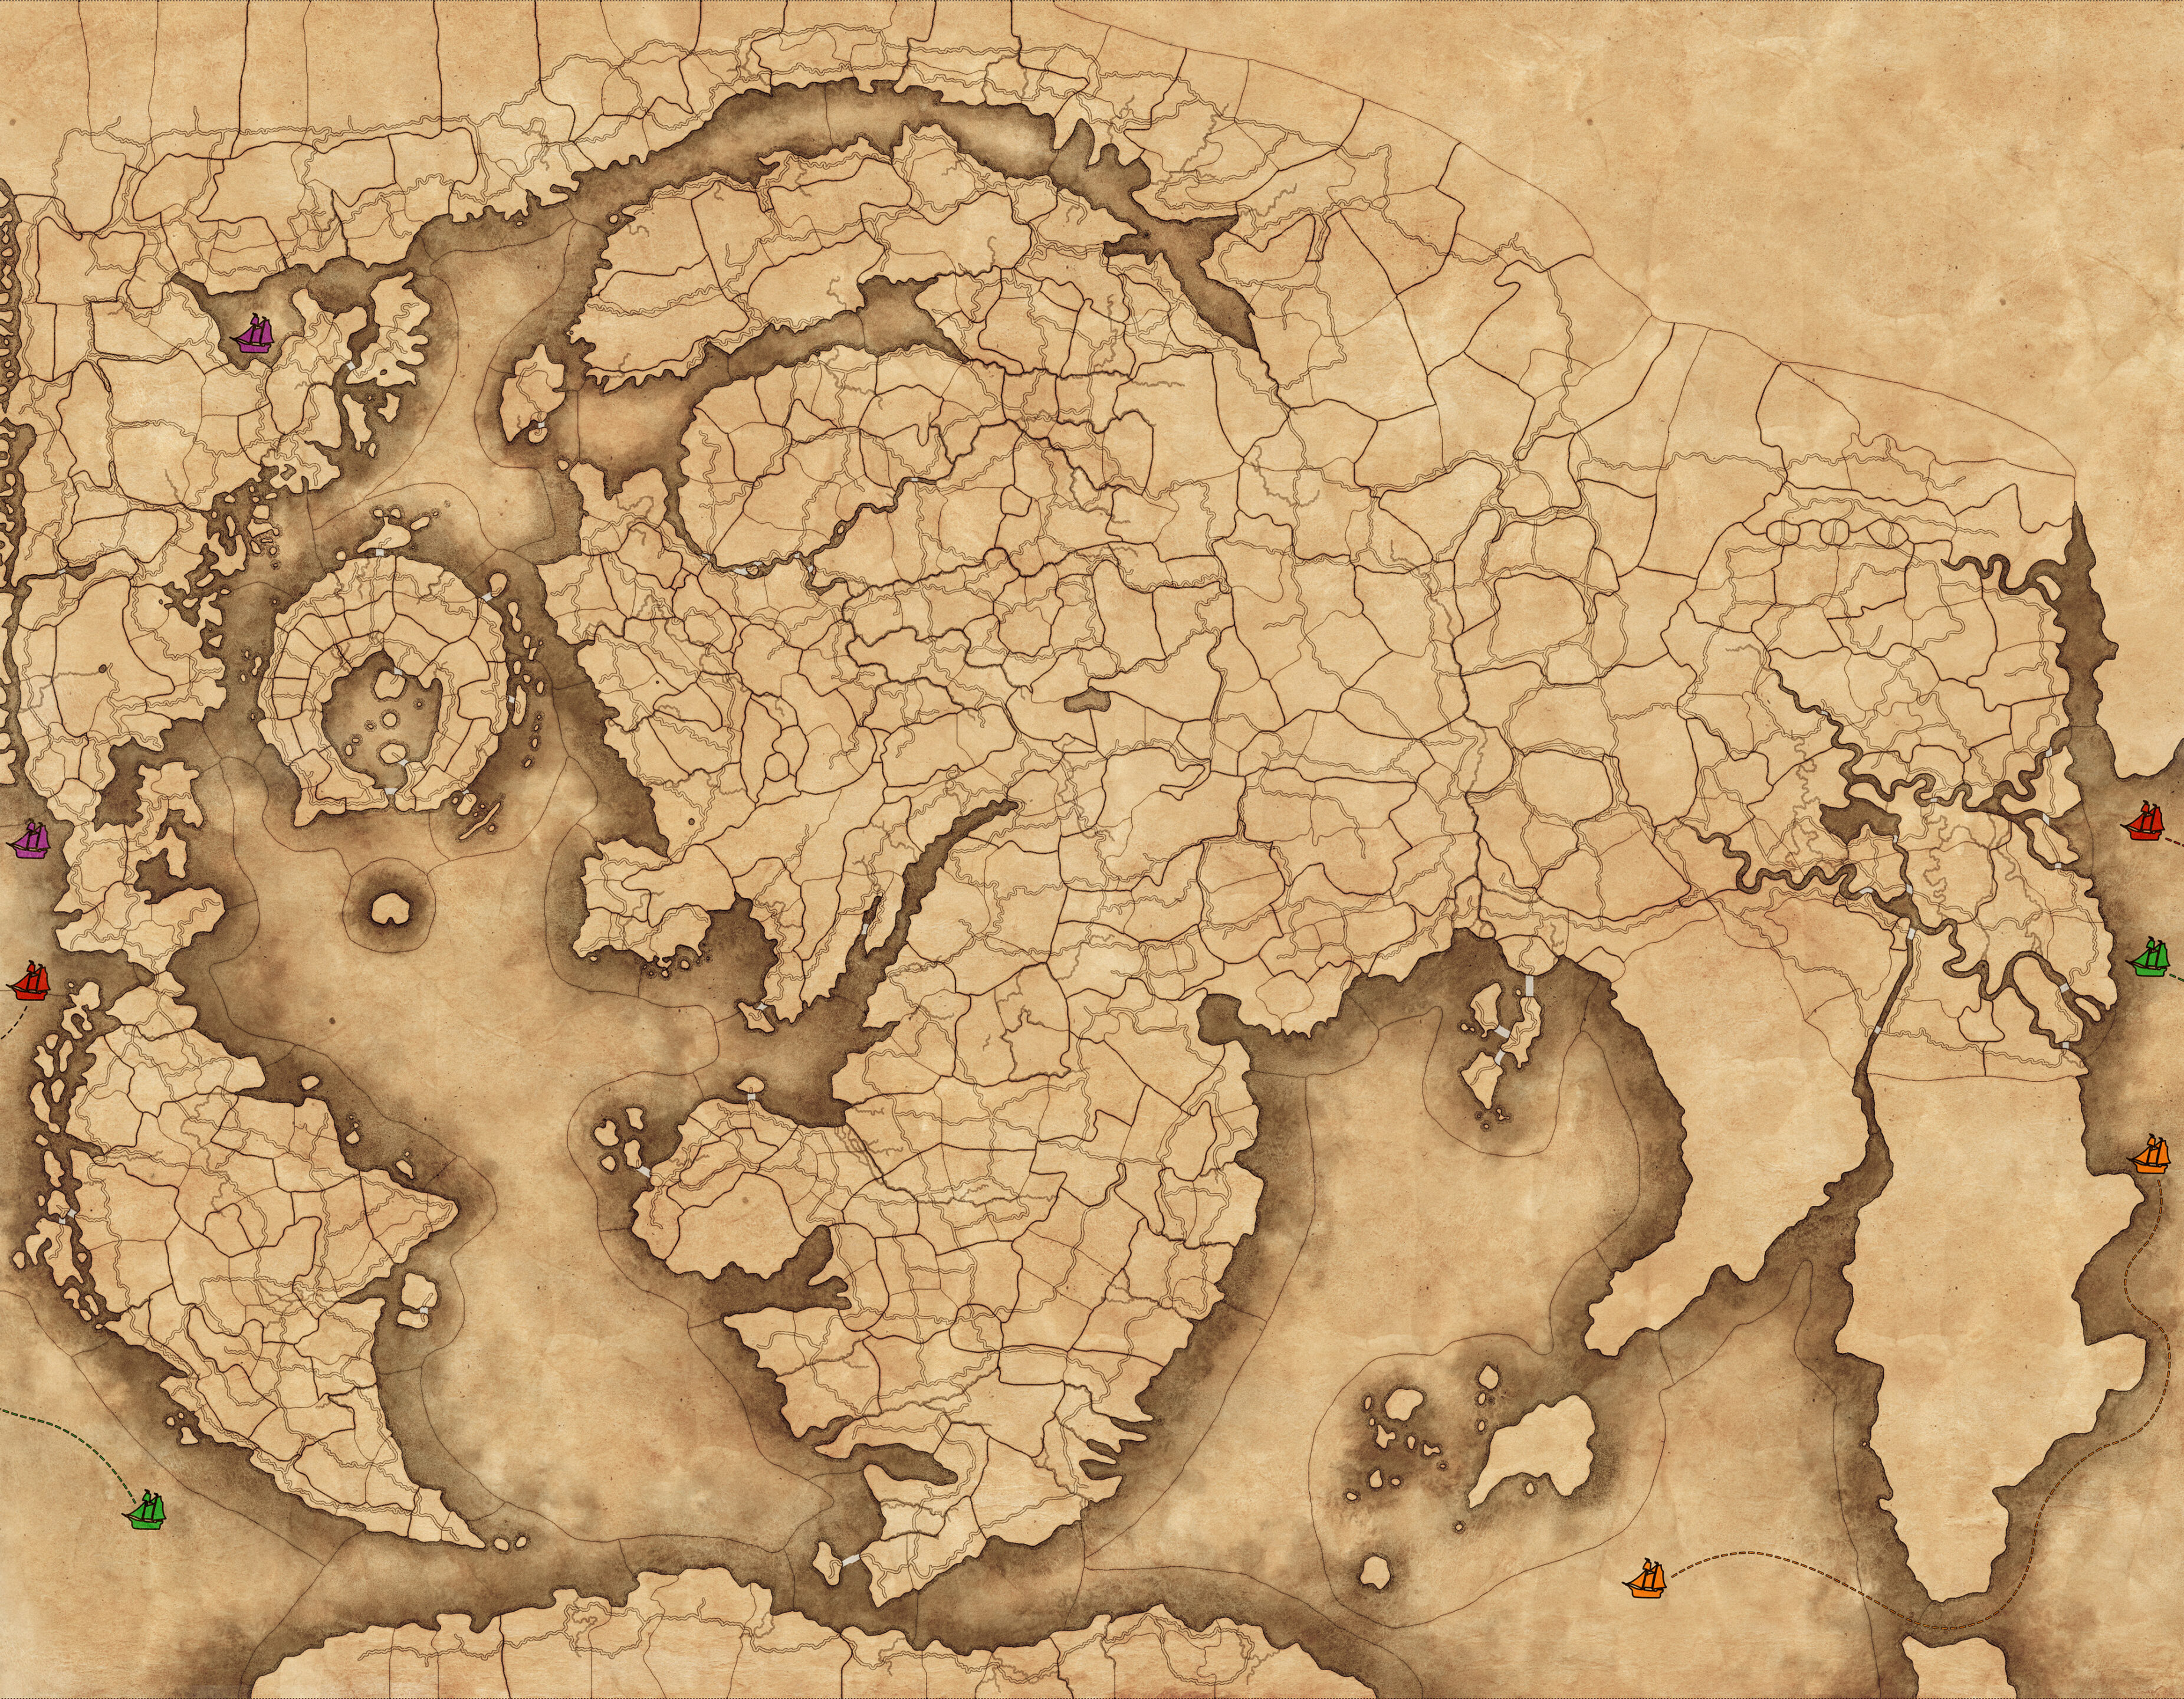 Μια εικόνα του χάρτη παιχνιδιών αθάνατων αυτοκρατοριών, συμπεριλαμβανομένων των χρωματιστών εικονιδίων σκαφών που αντιπροσωπεύουν τις θαλάσσιες λωρίδες που μπορούν να χρησιμοποιηθούν για να διασχίσουν μεγάλες αποστάσεις του κόσμου